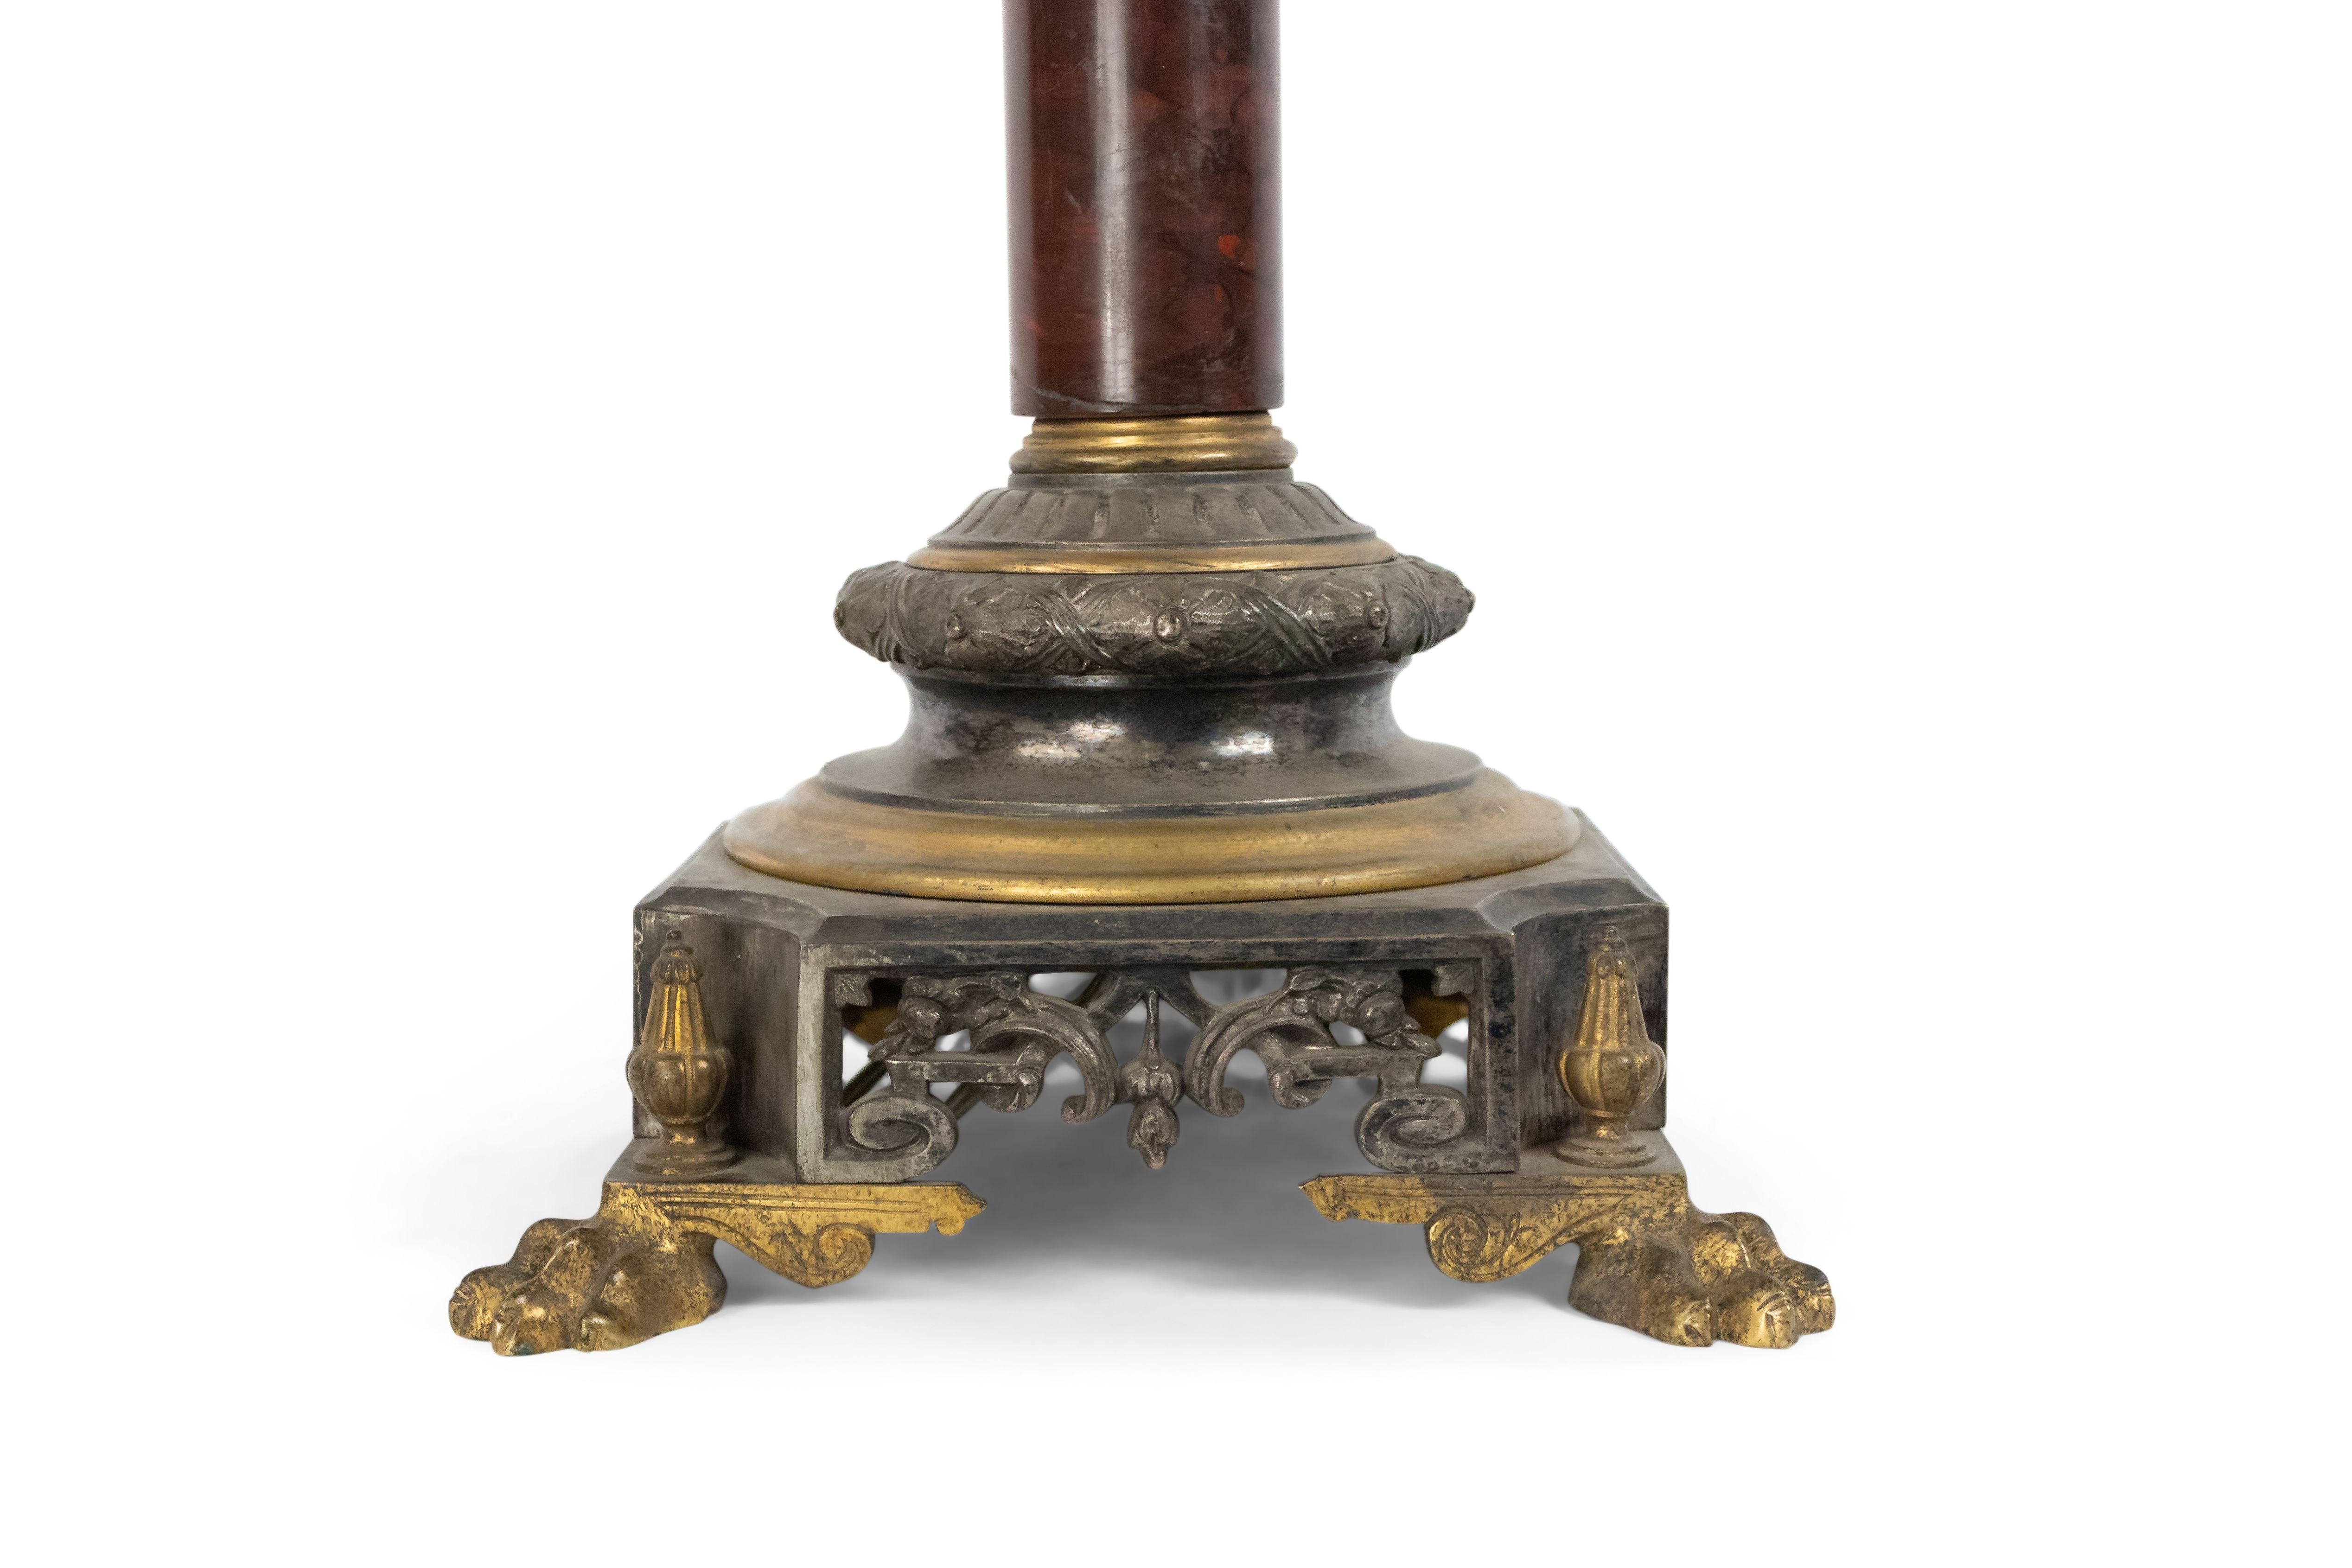 Lampe de table à colonne en marbre rouge de style victorien français, avec base carrée en bronze doré et argent, avec pieds griffes.